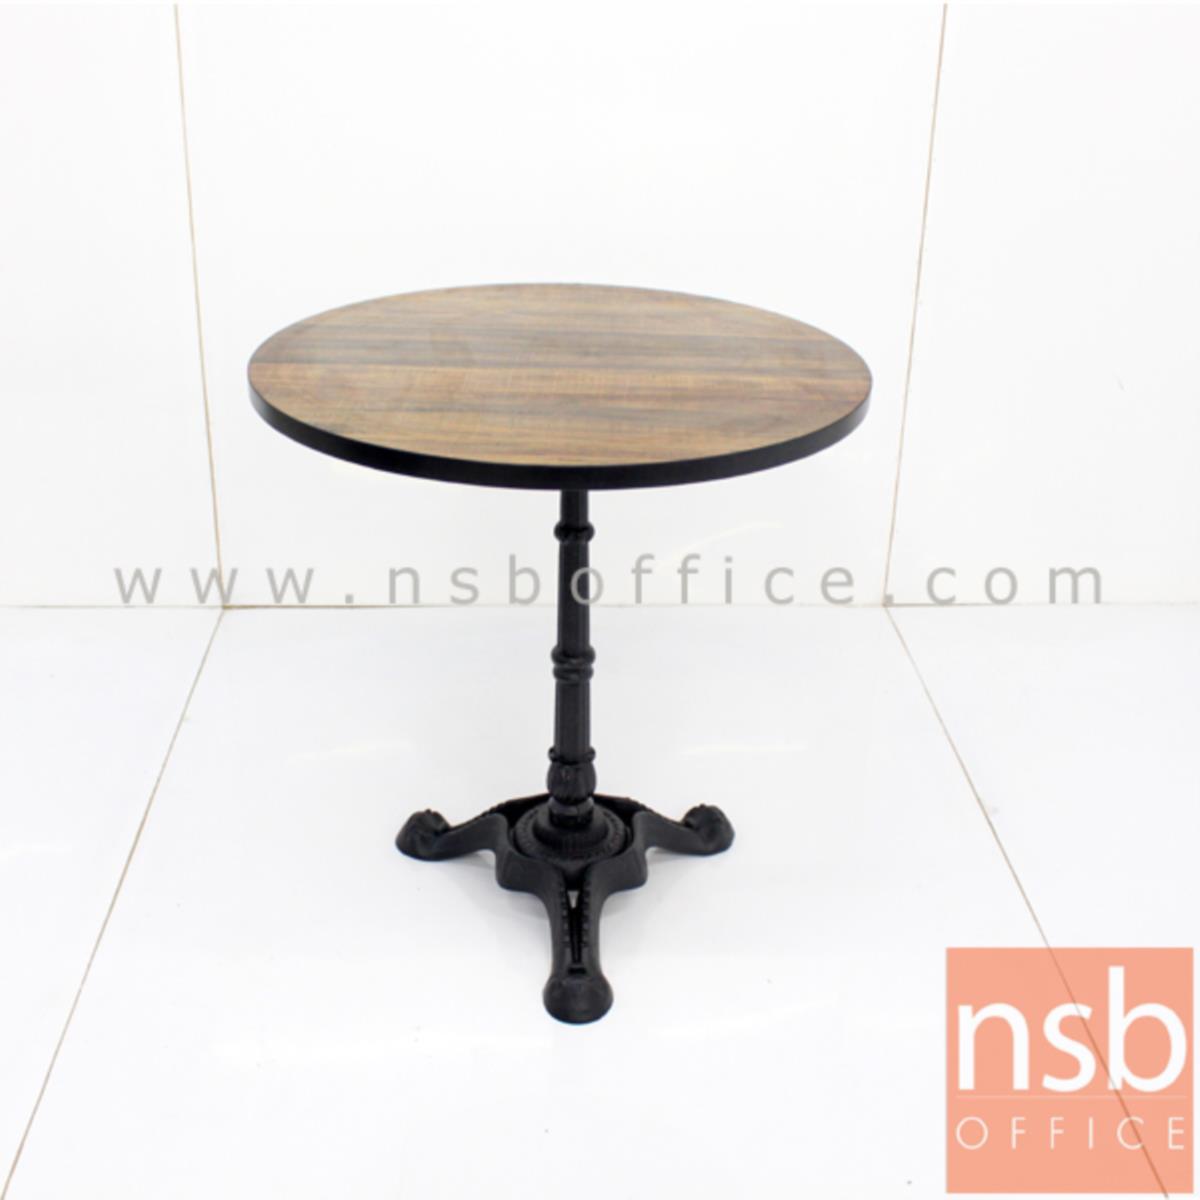 โต๊ะบาร์ COFFEE รุ่น H-CF23 ขนาด 60W ,70W ,80W ,60Di ,70Di ,80Di cm.   ขาเหล็กฐานสามแฉกสีดำ